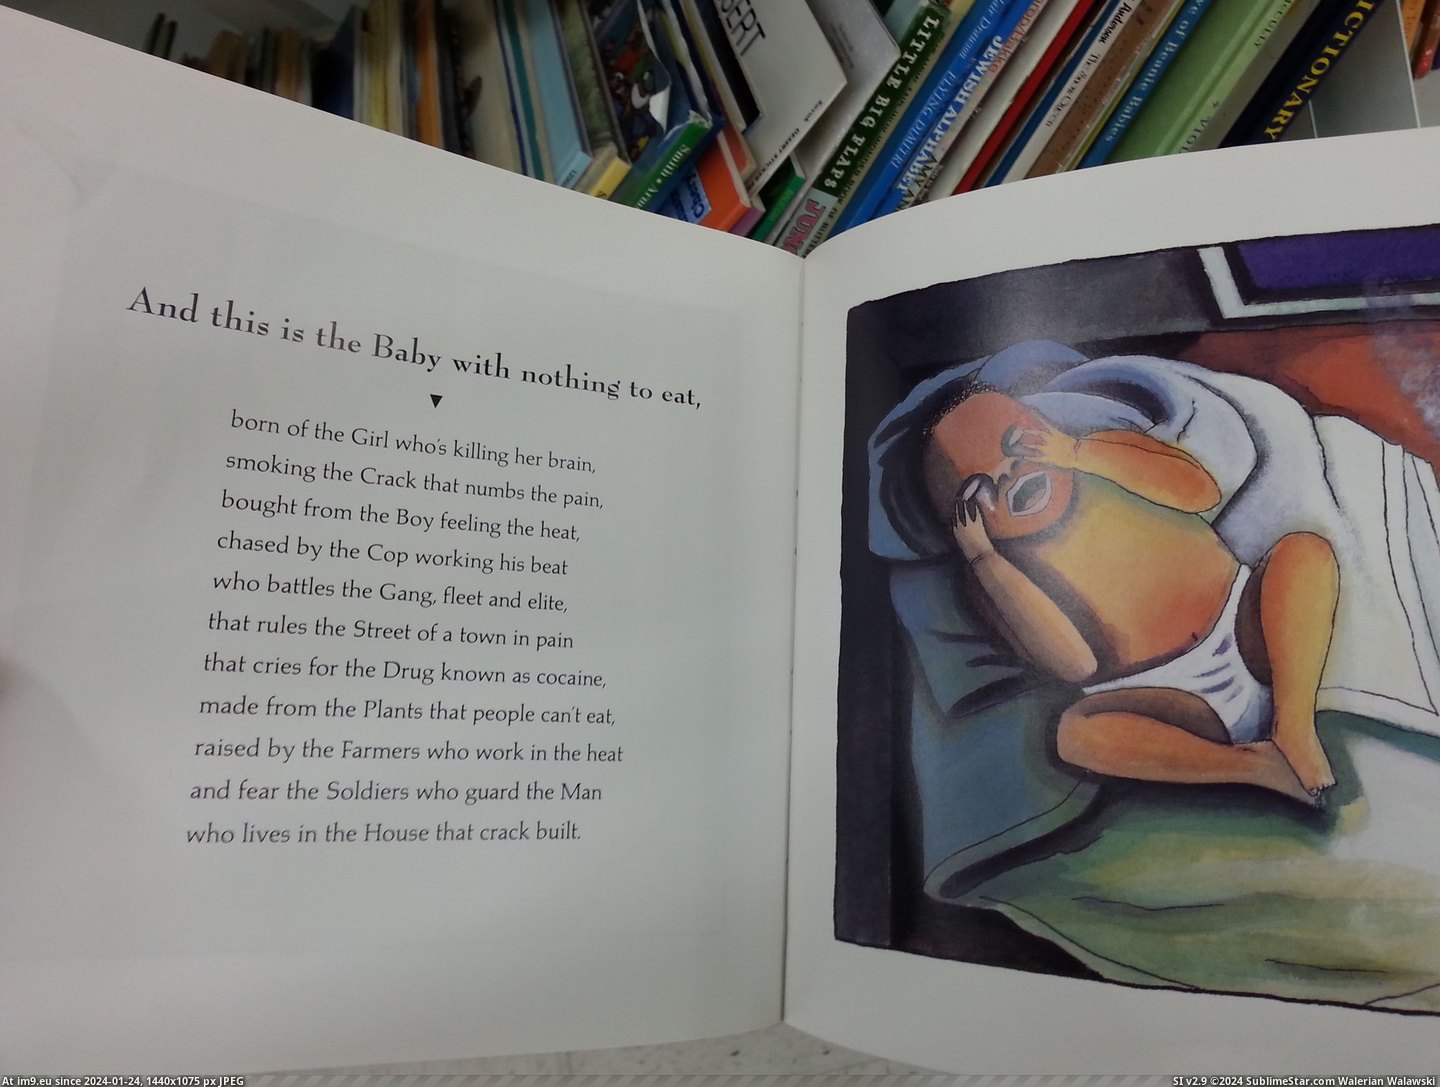 #Wtf #Store #Thrift #Crack #Book #Children [Wtf] Found this children's book about crack at a thrift store today 1 Pic. (Bild von album My r/WTF favs))